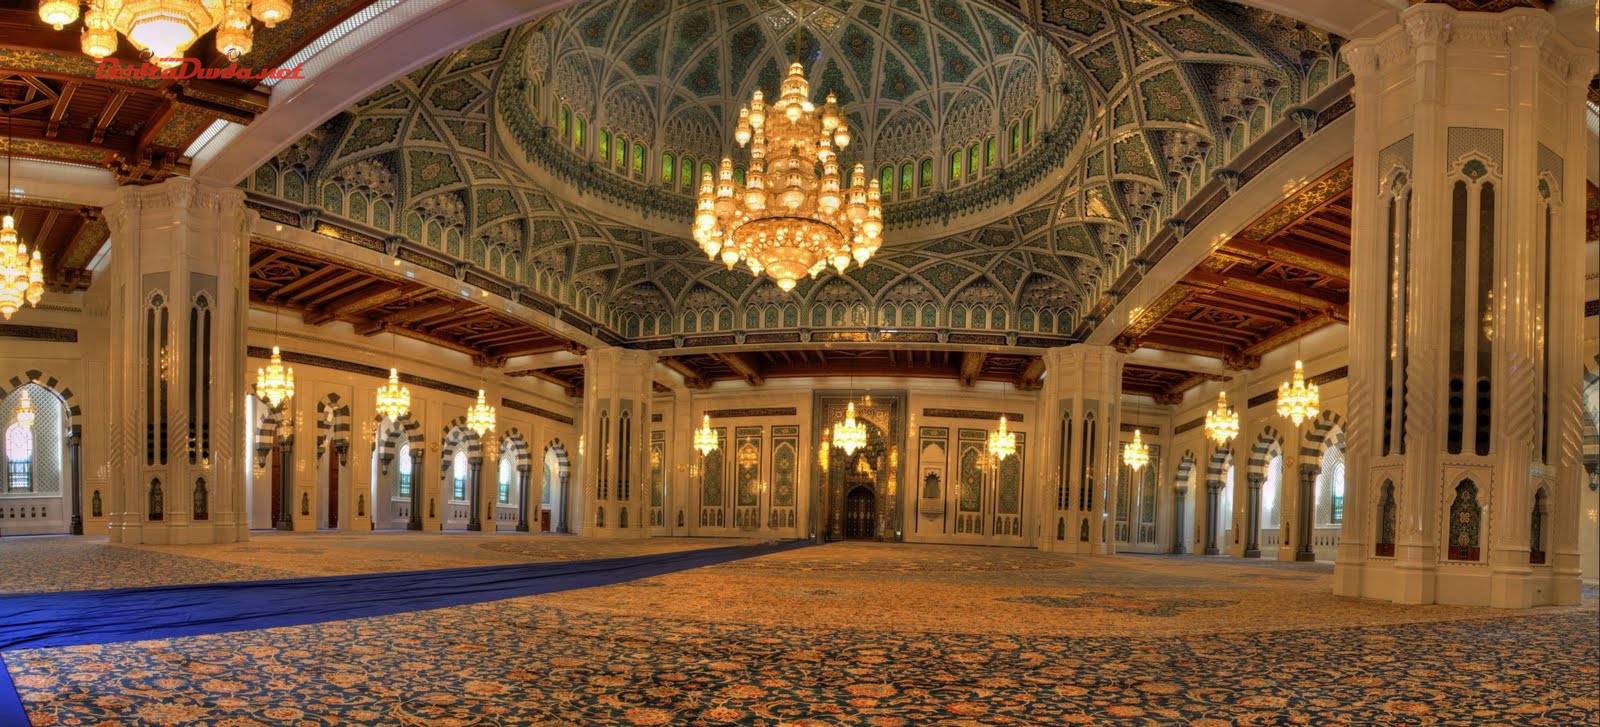 Masjid Tiban : Harga Tiket, Foto, Lokasi, Fasilitas dan Spot